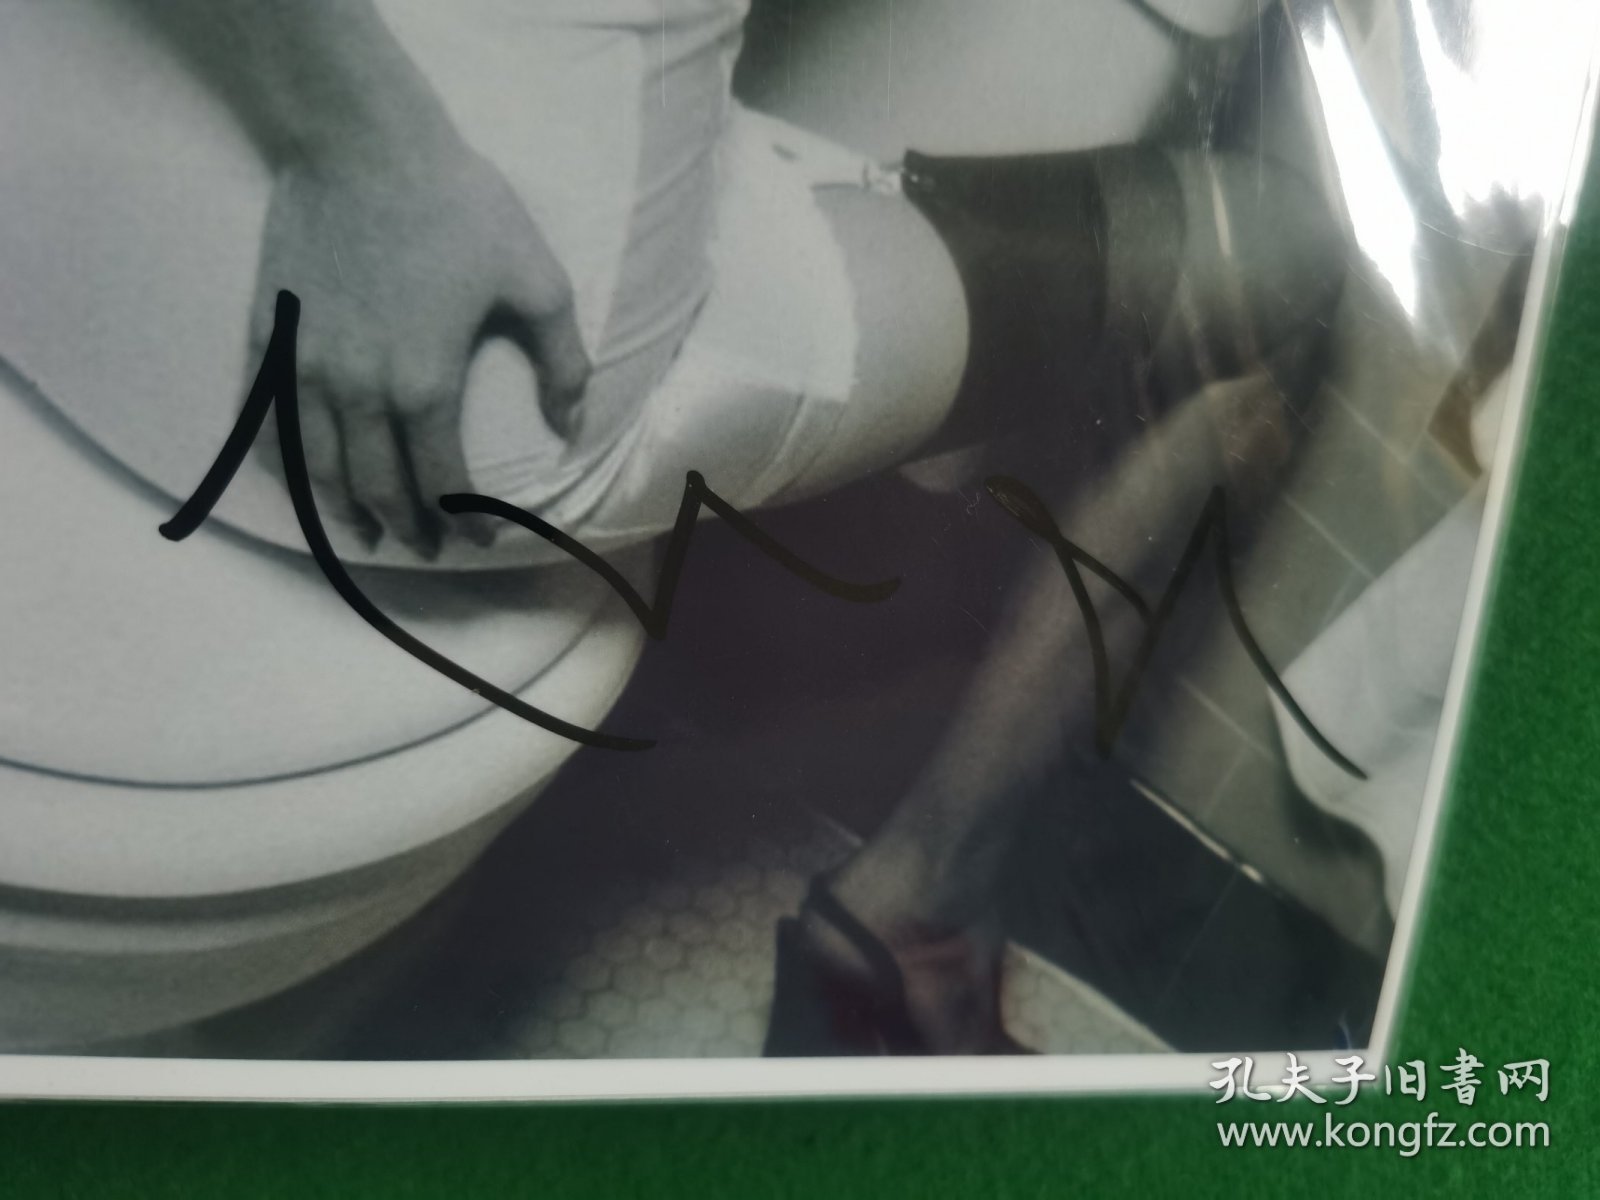 《古墓丽影》“罗拉” 安吉丽娜·朱莉 亲笔签名照片，带COA防伪证书。照片尺寸为10英寸25.4厘米×20.3厘米。